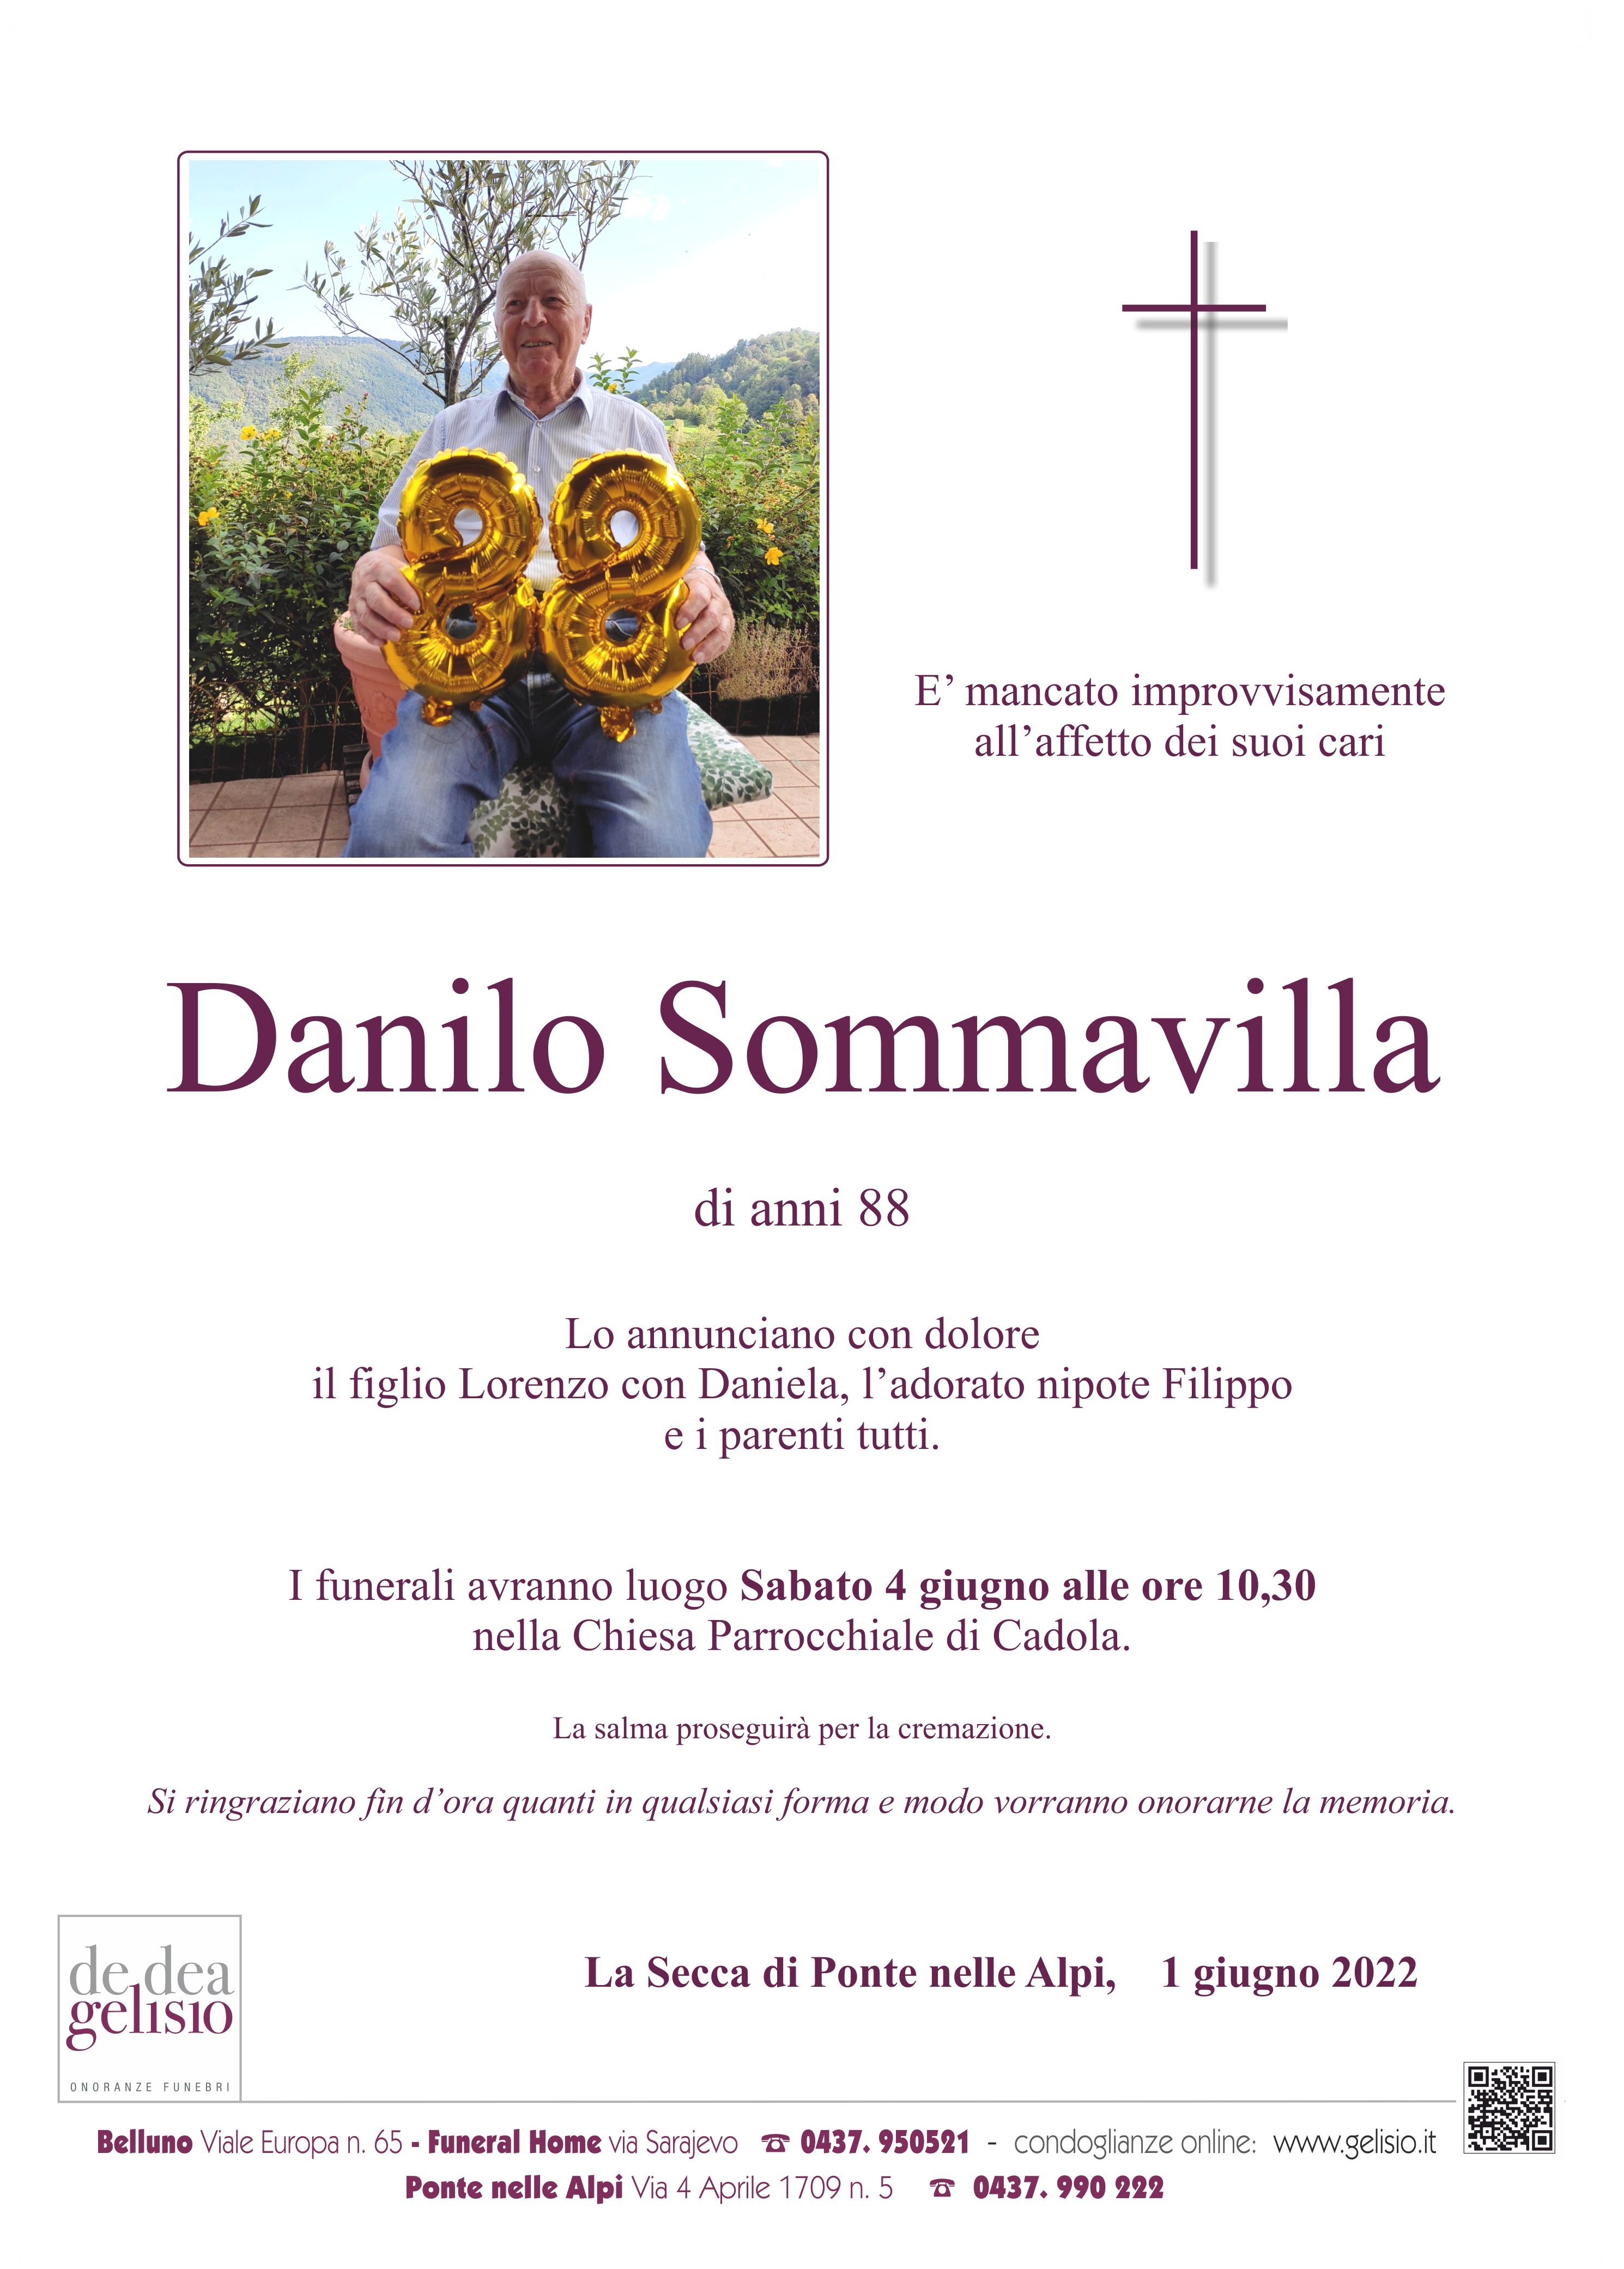 Sommavilla Danilo